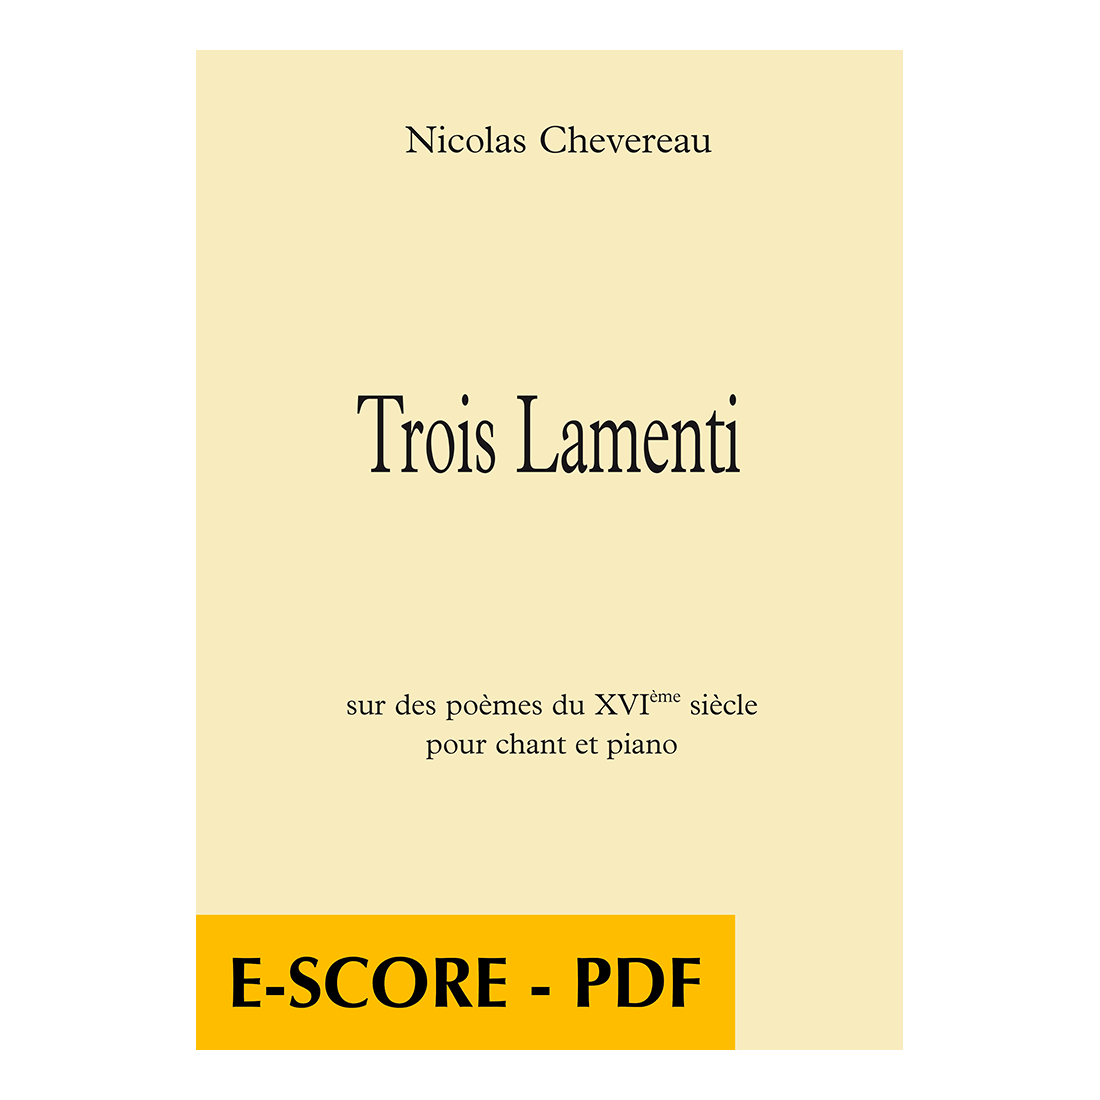 Trois lamenti sur des poèmes du XVIe siècle pour chant et piano- E-score PDF